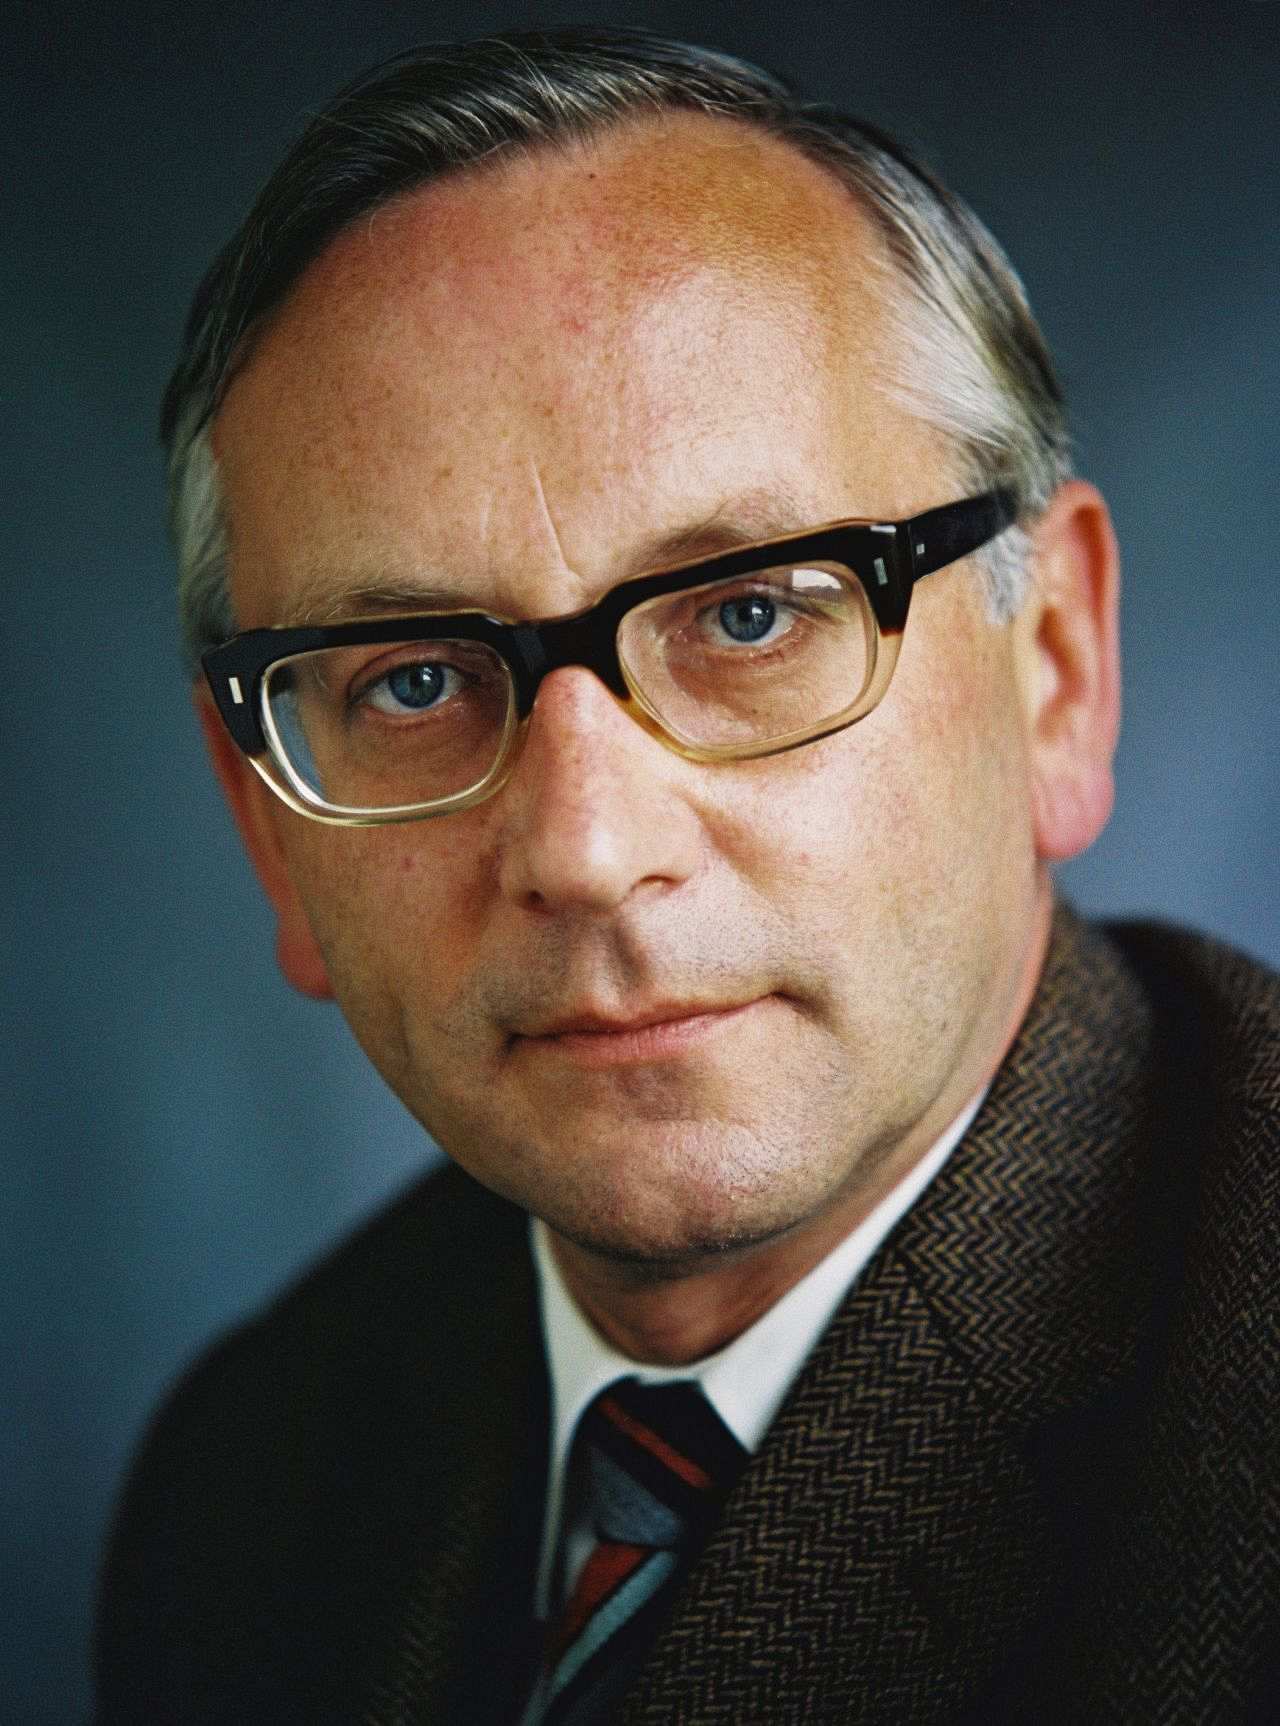 Porträtfoto von Günter Gaus, Ständiger Vertreter der Bundesrepublik in der DDR (1973-1981).